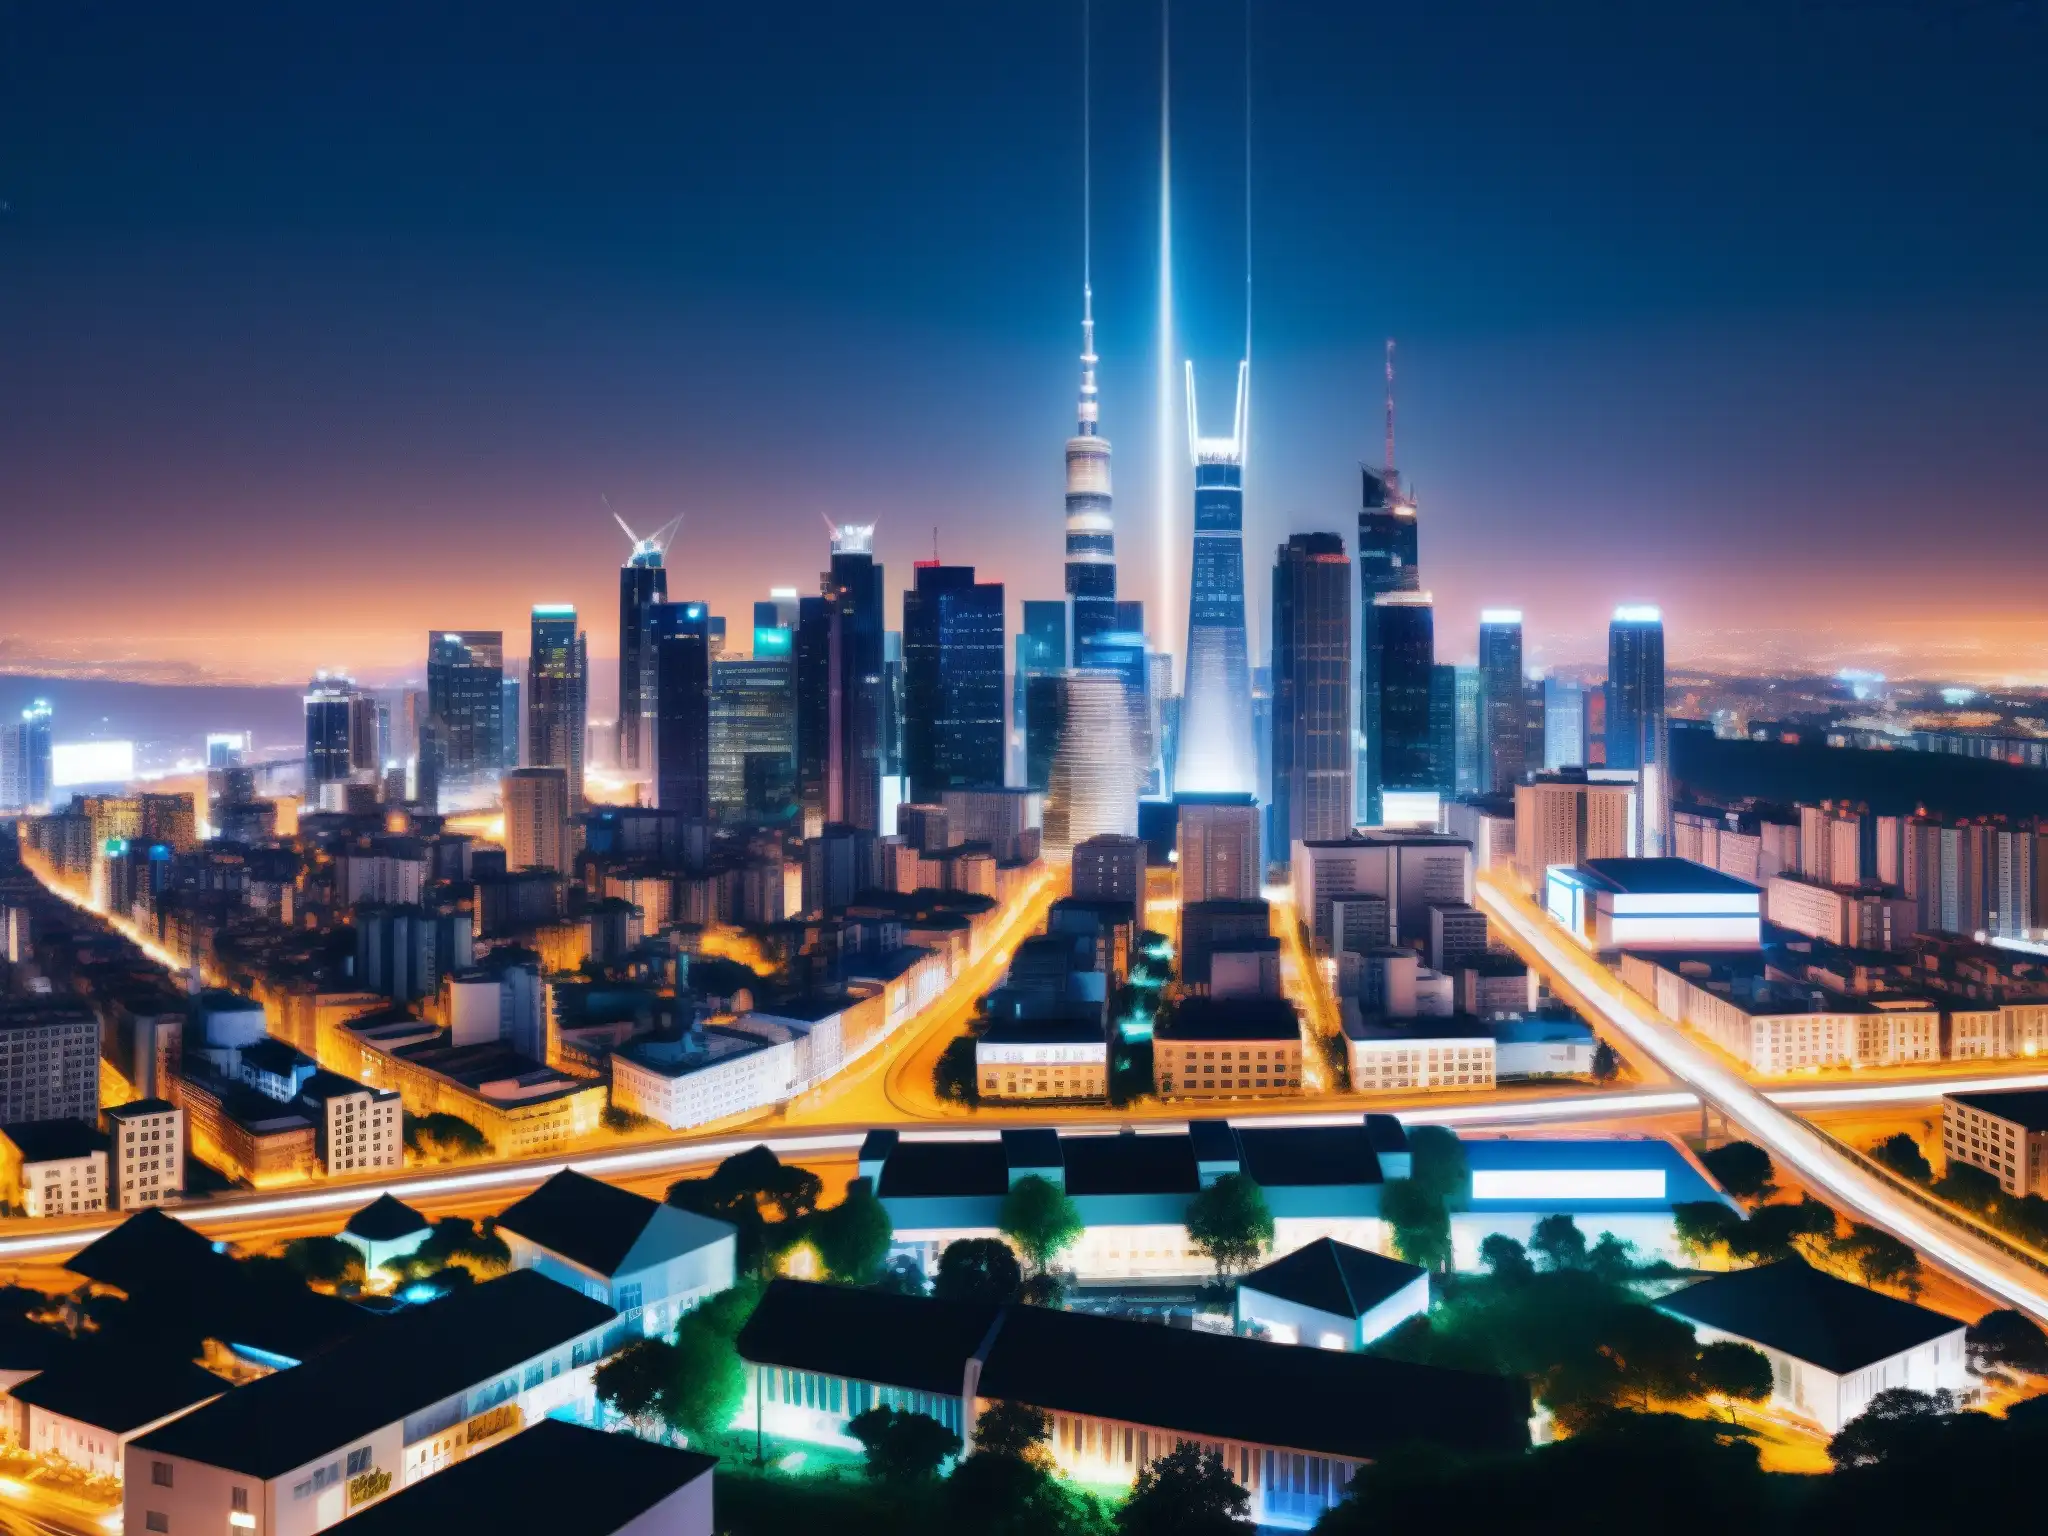 Vibrante ciudad nocturna con torres 5G iluminadas, simbolizando la integración tecnológica y la teoría conspiración 5G amenaza innovadora